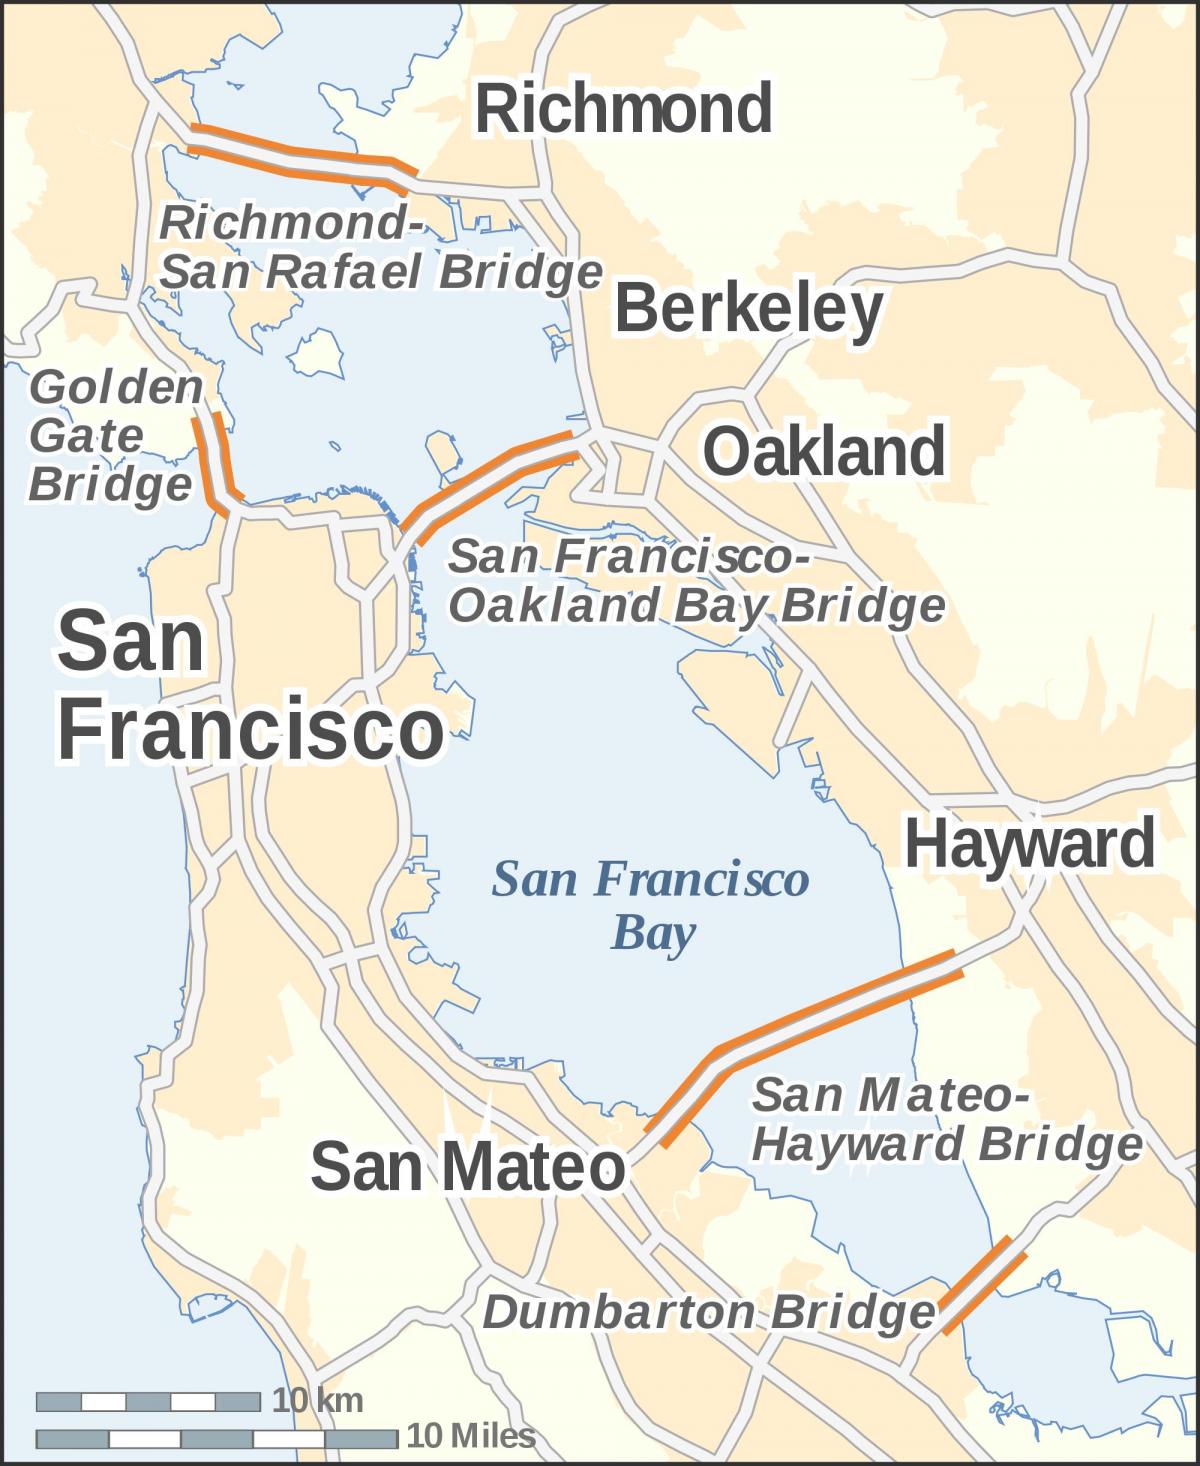 Kaart San Francisco sillad